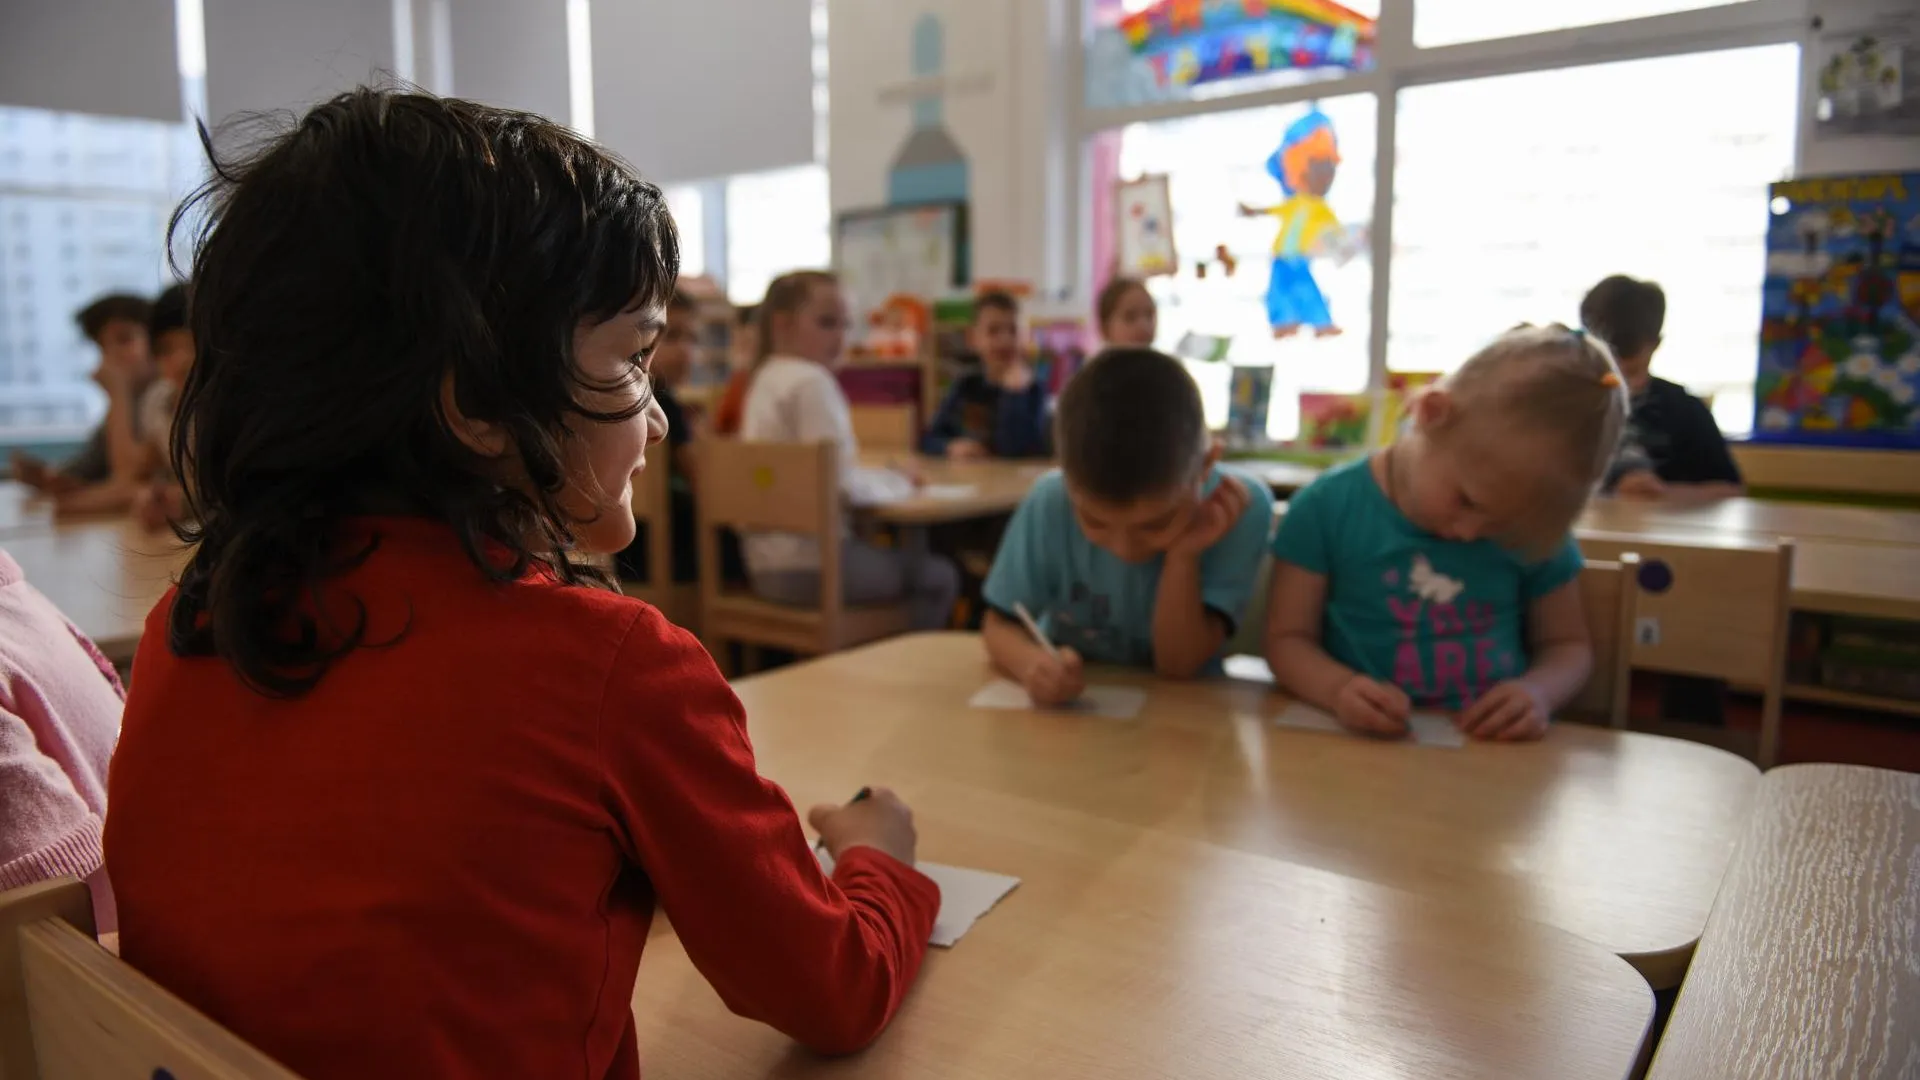 Занятия в рамках проекта «Предшкола: стандарт детского сада» прошли в Балашихе